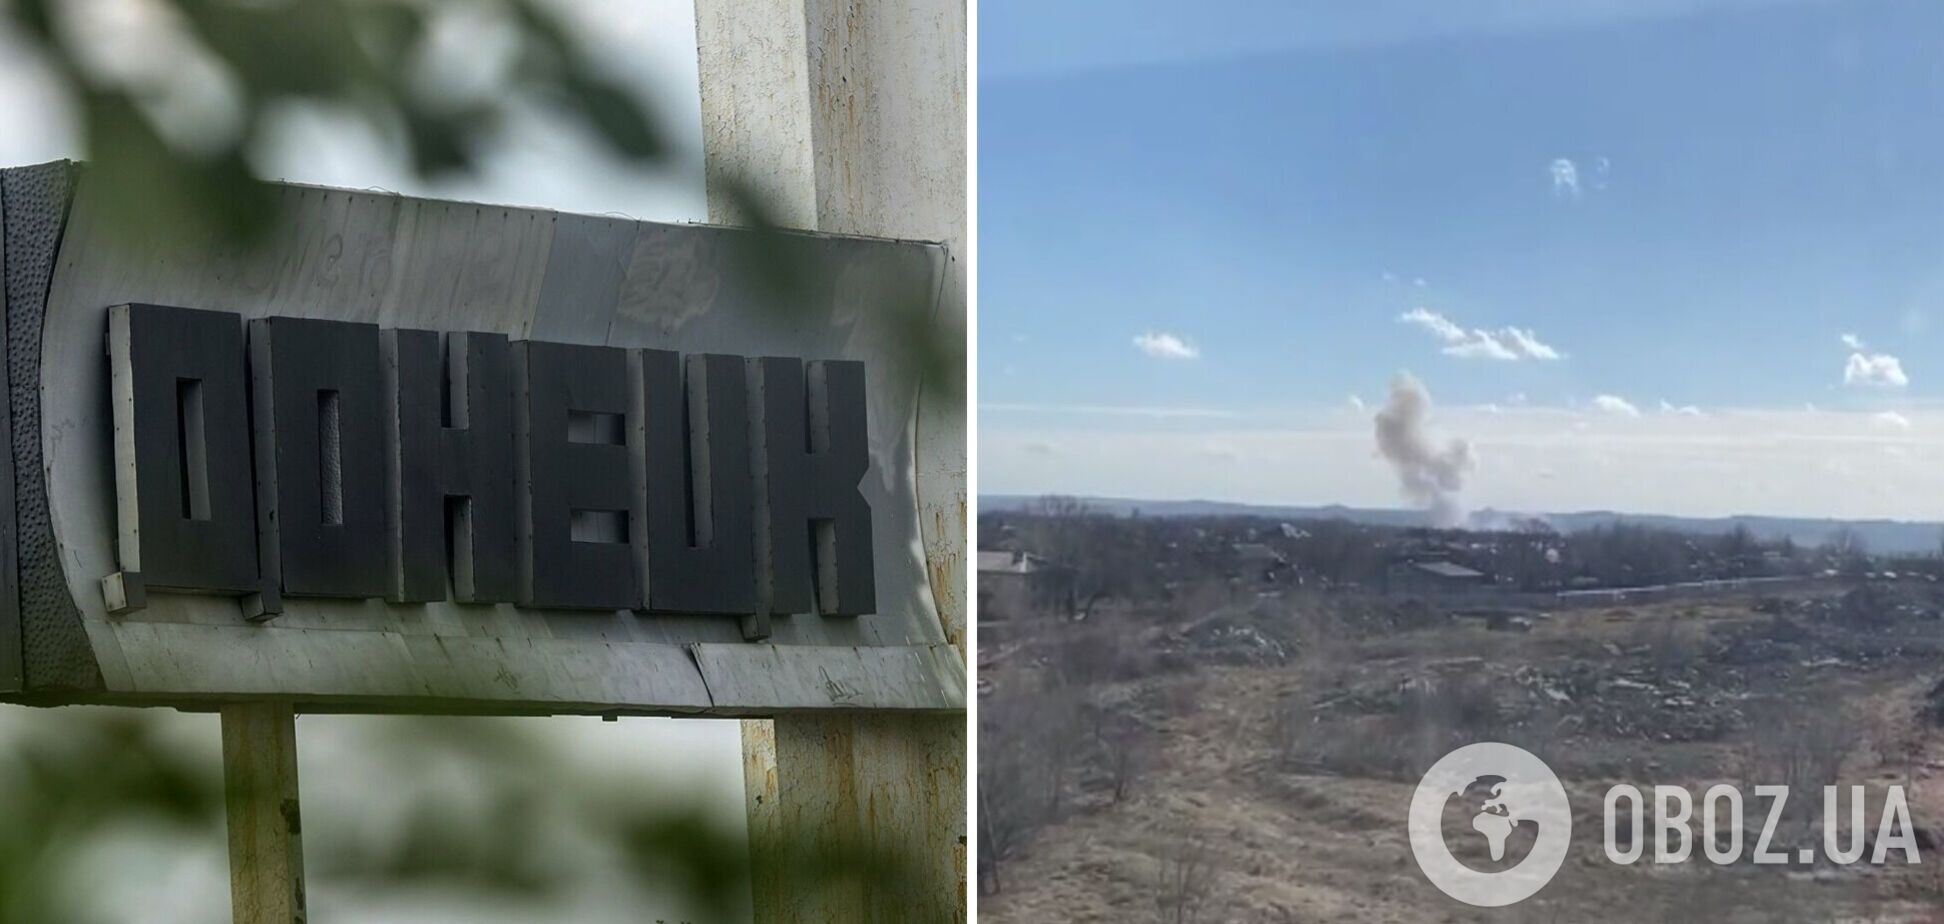 В Донецке заявили о мощном взрыве, но данные не подтвердились. Фото и видео